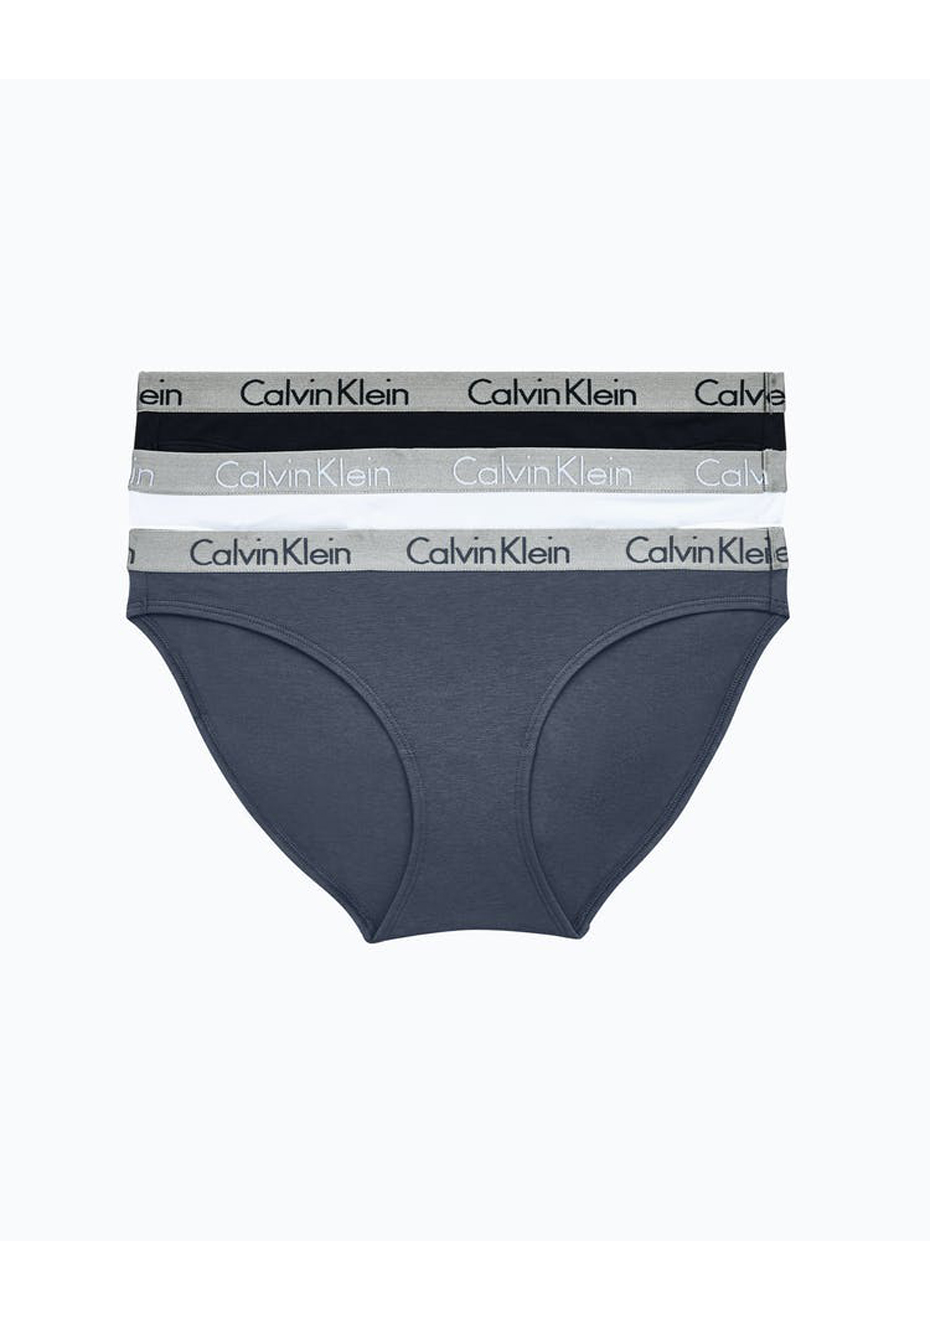 calvin klein womens underwear 3 pack